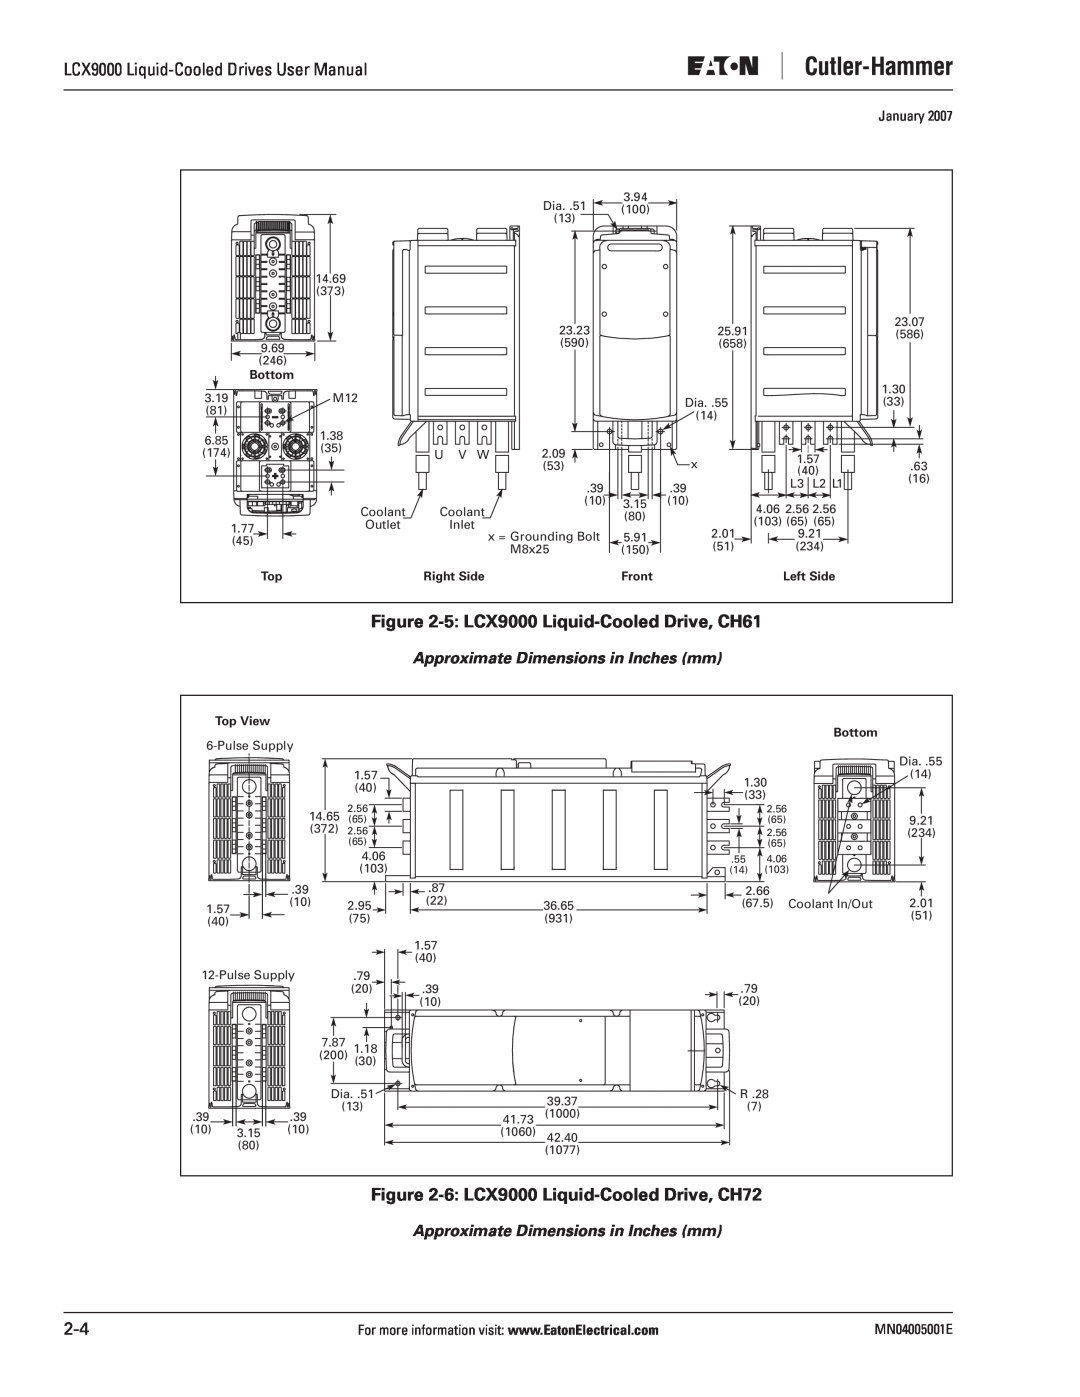 J. T. Eaton user manual 5 LCX9000 Liquid-Cooled Drive, CH61, 6 LCX9000 Liquid-Cooled Drive, CH72, January 